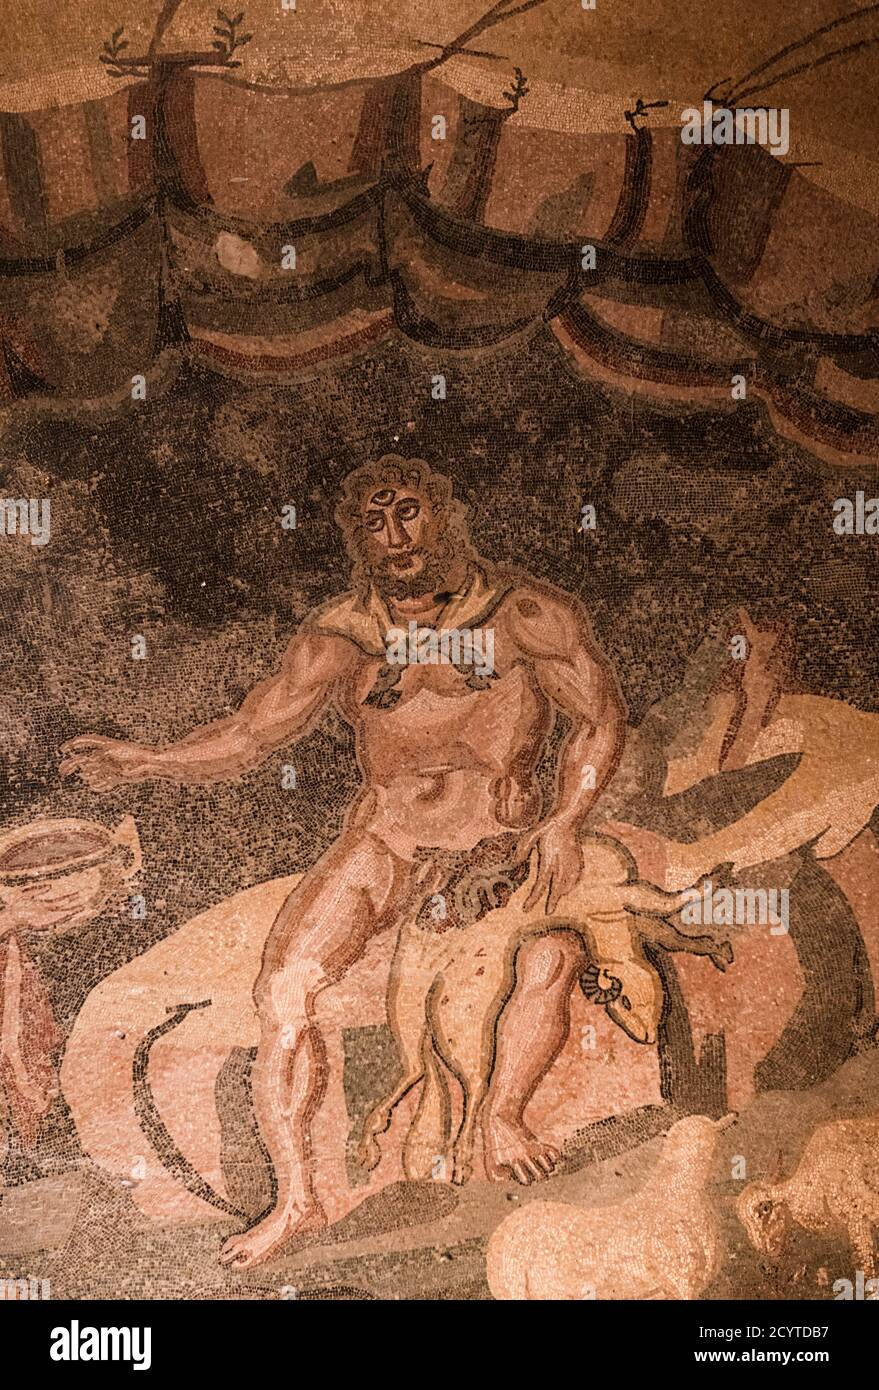 Polyphemus aus den Mosaiken in der Villa Armerina, Sizilien. Die Szene ist der Geschichte von Odysseus und Polyphemus entnommen, die Homer in der Odyssee beschrieb. Stockfoto